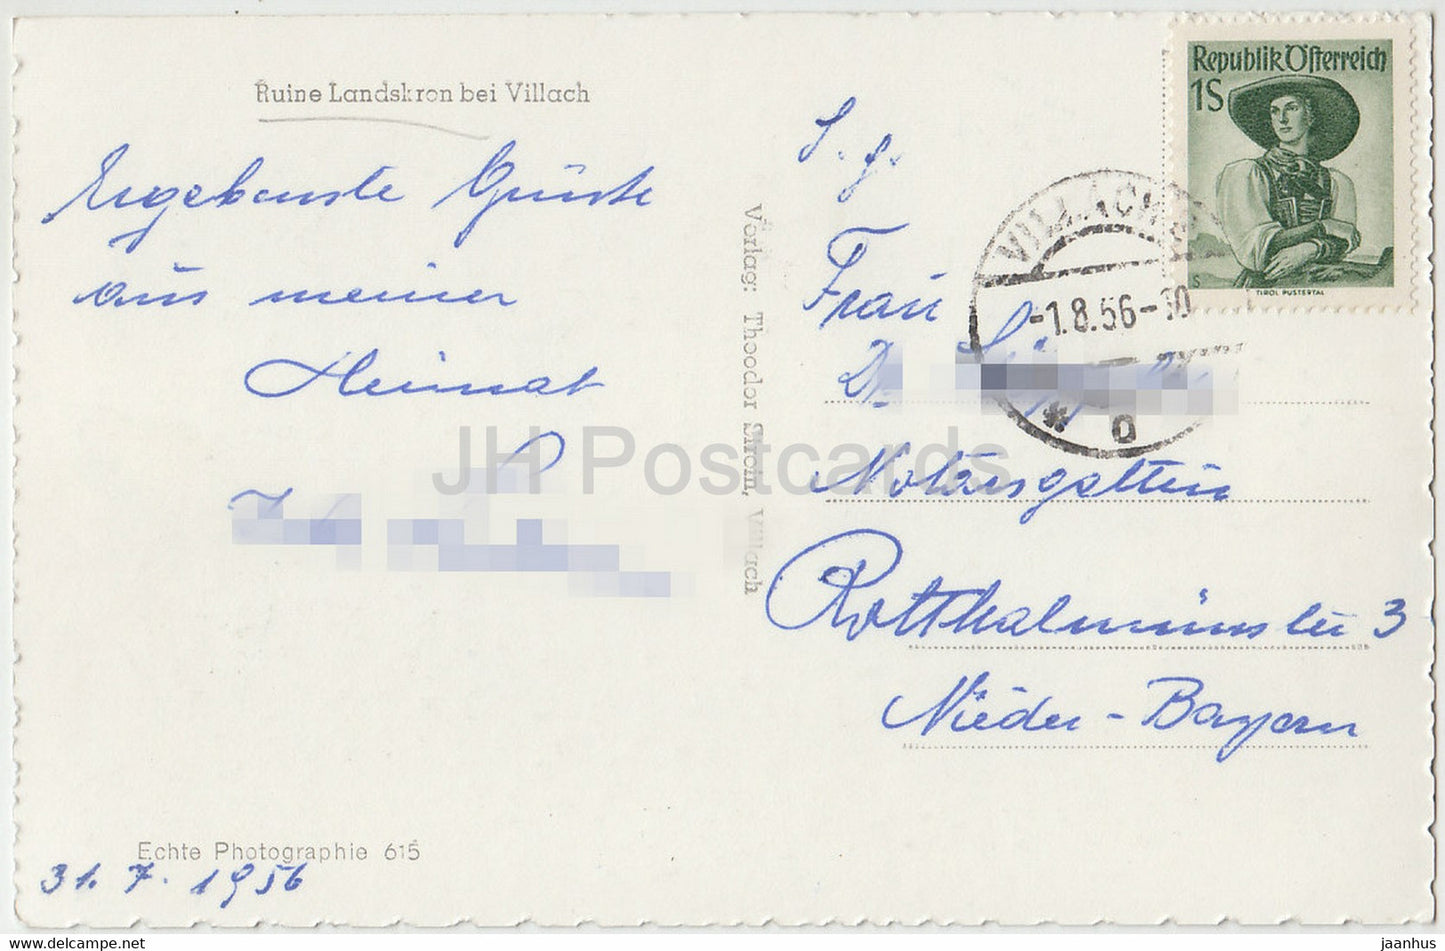 Ruine Landskron bei Villach - carte postale ancienne - 1956 - Autriche - utilisé